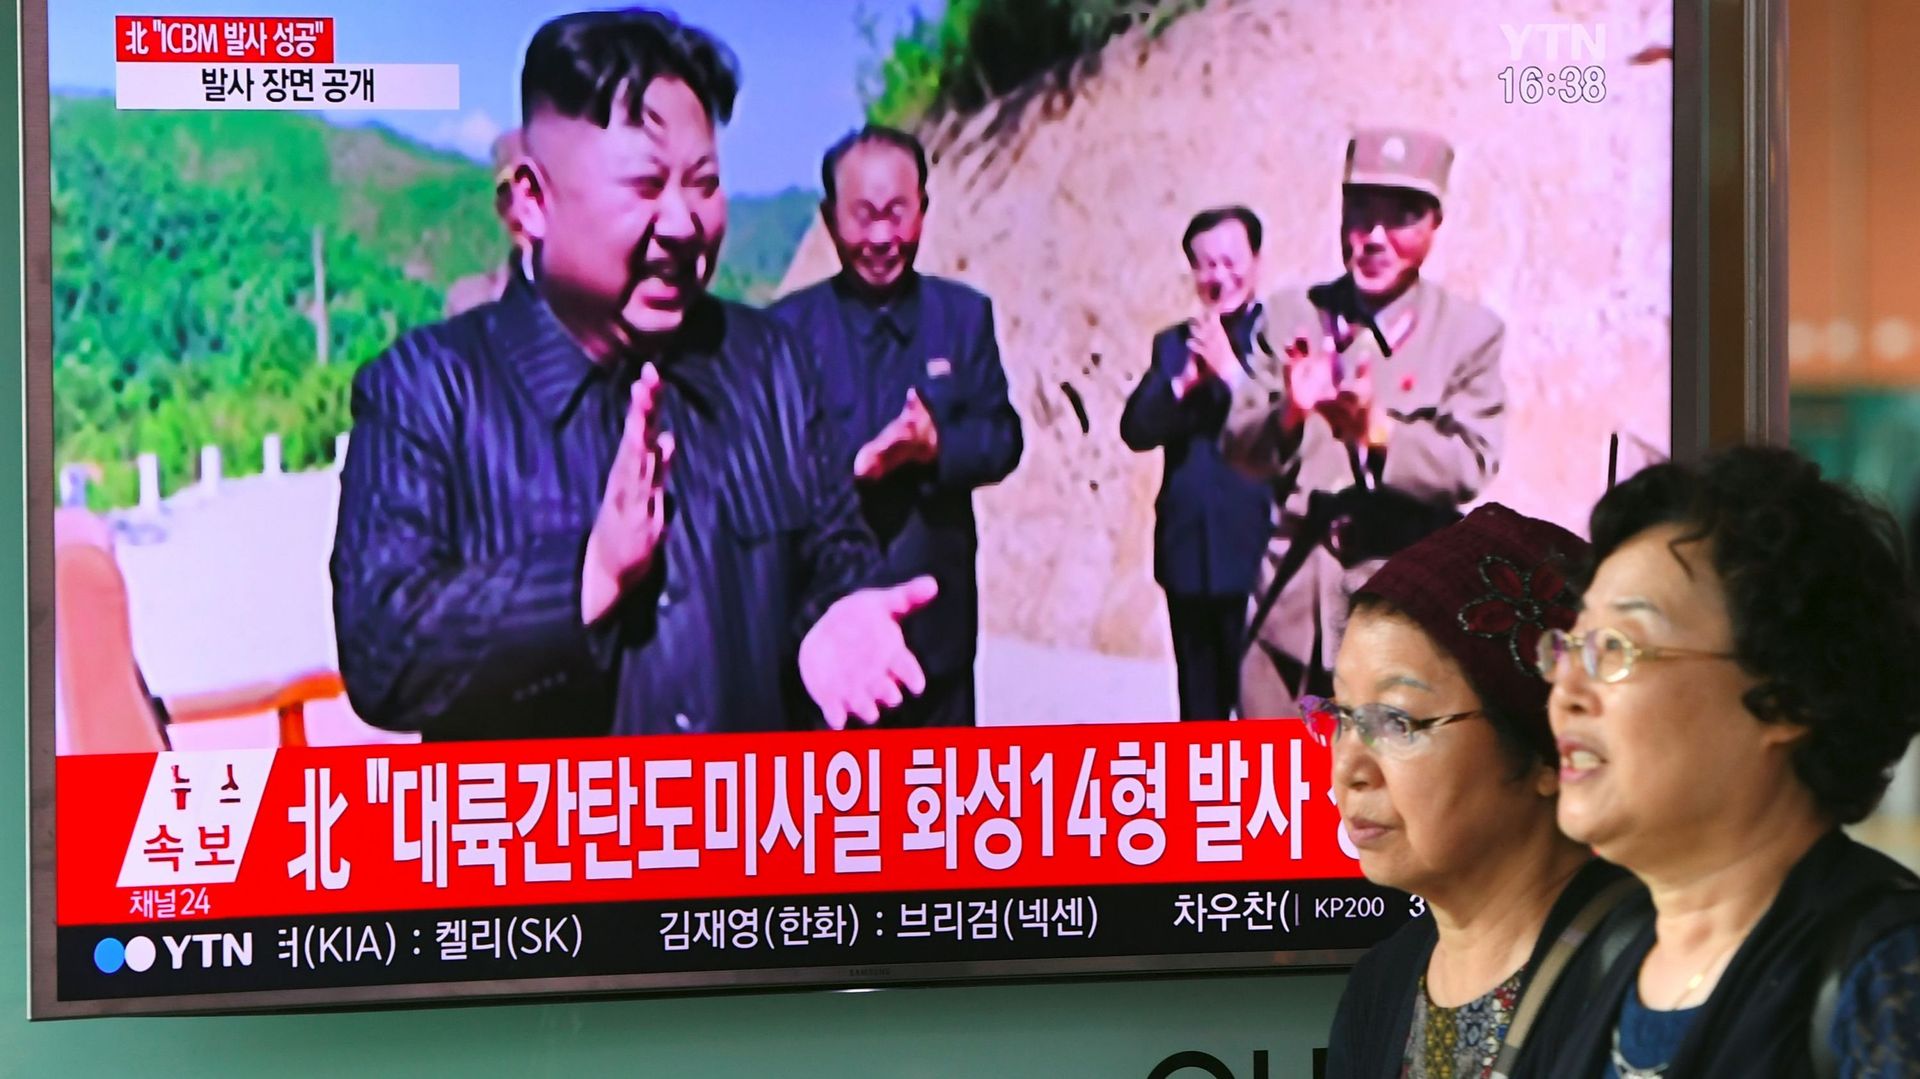  une "contre-offensive" provoquera des "conséquences catastrophiques", selon une déclaration du ministère des Affaires étrangères de Corée du Nord.